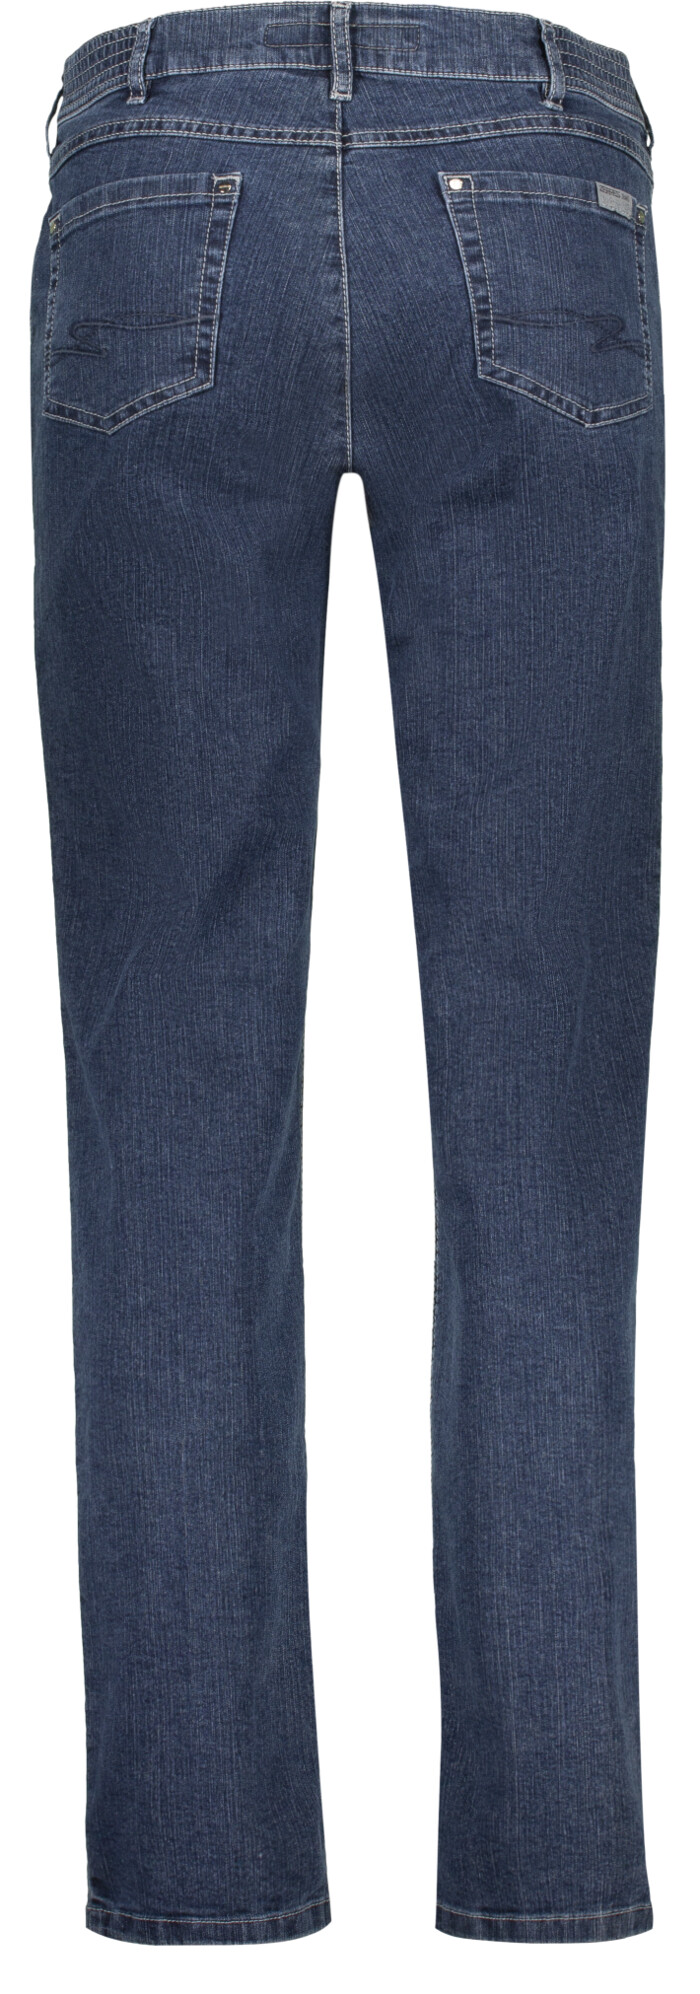 Jeans model Greta 